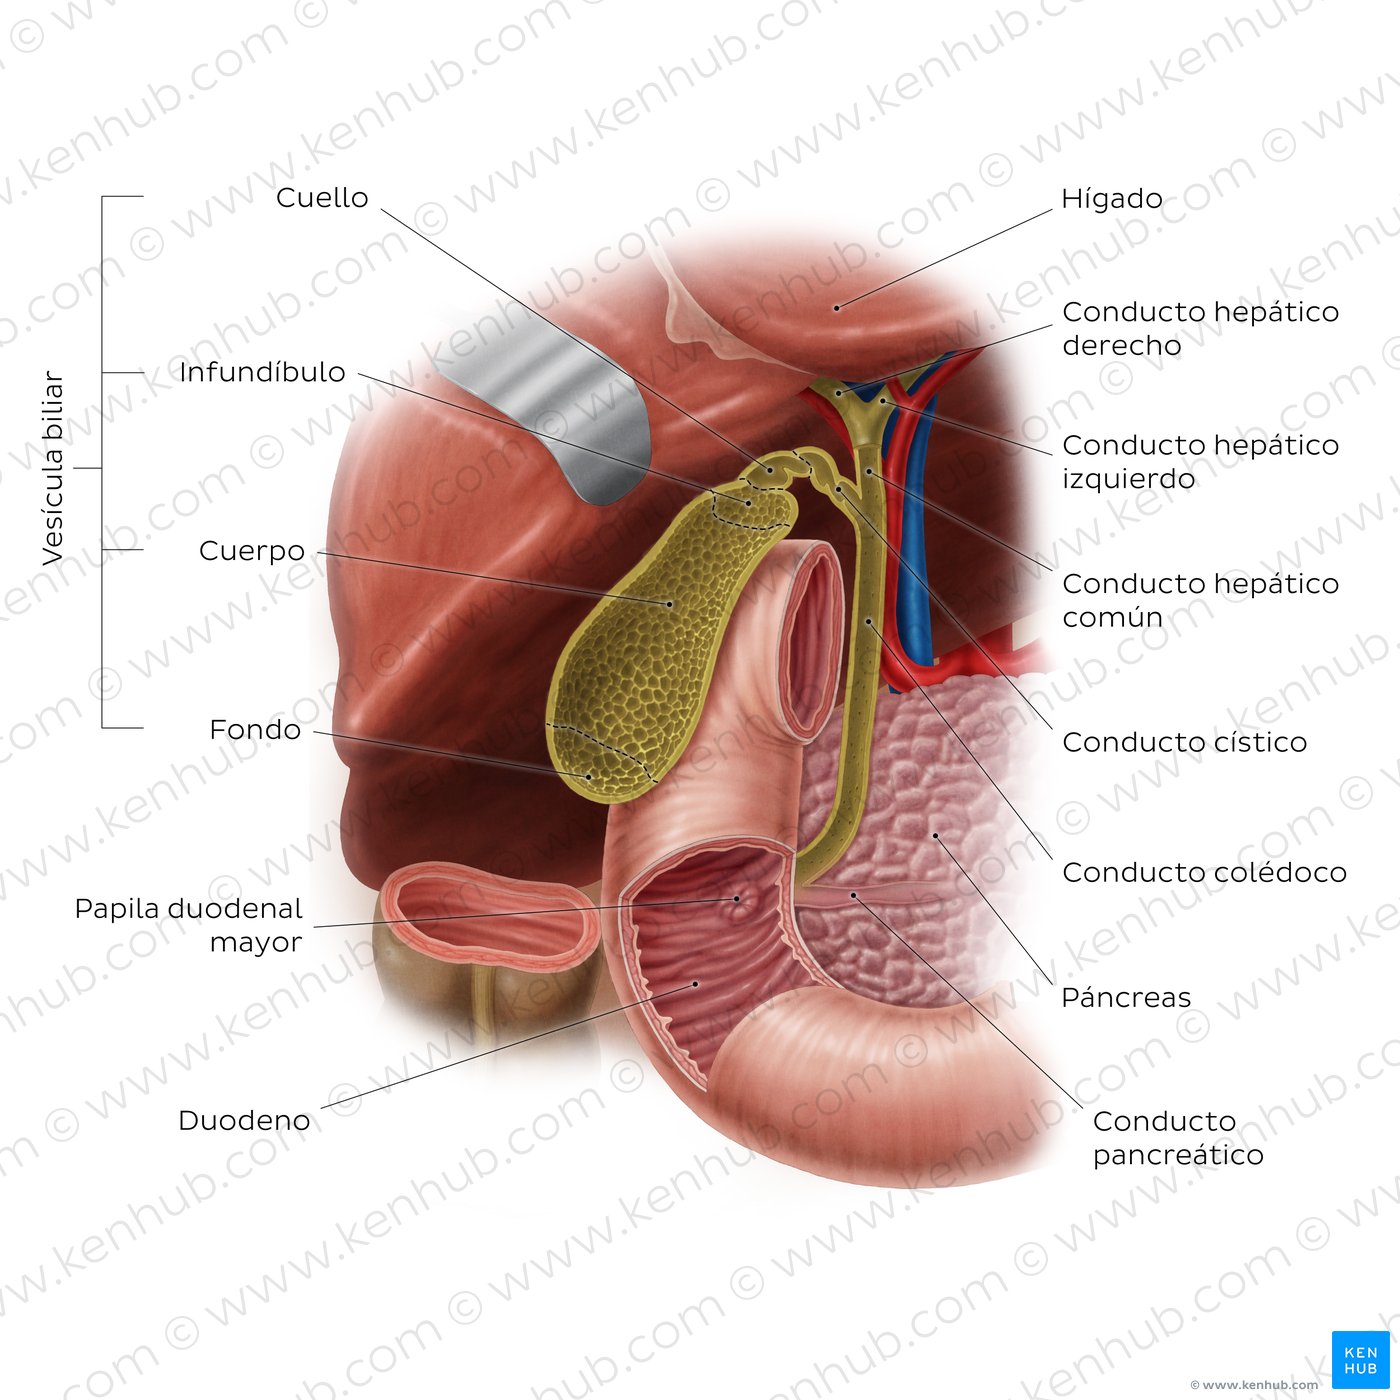 Anatomía del sistema biliar y ubicación de la vesícula biliar: Vista anterior